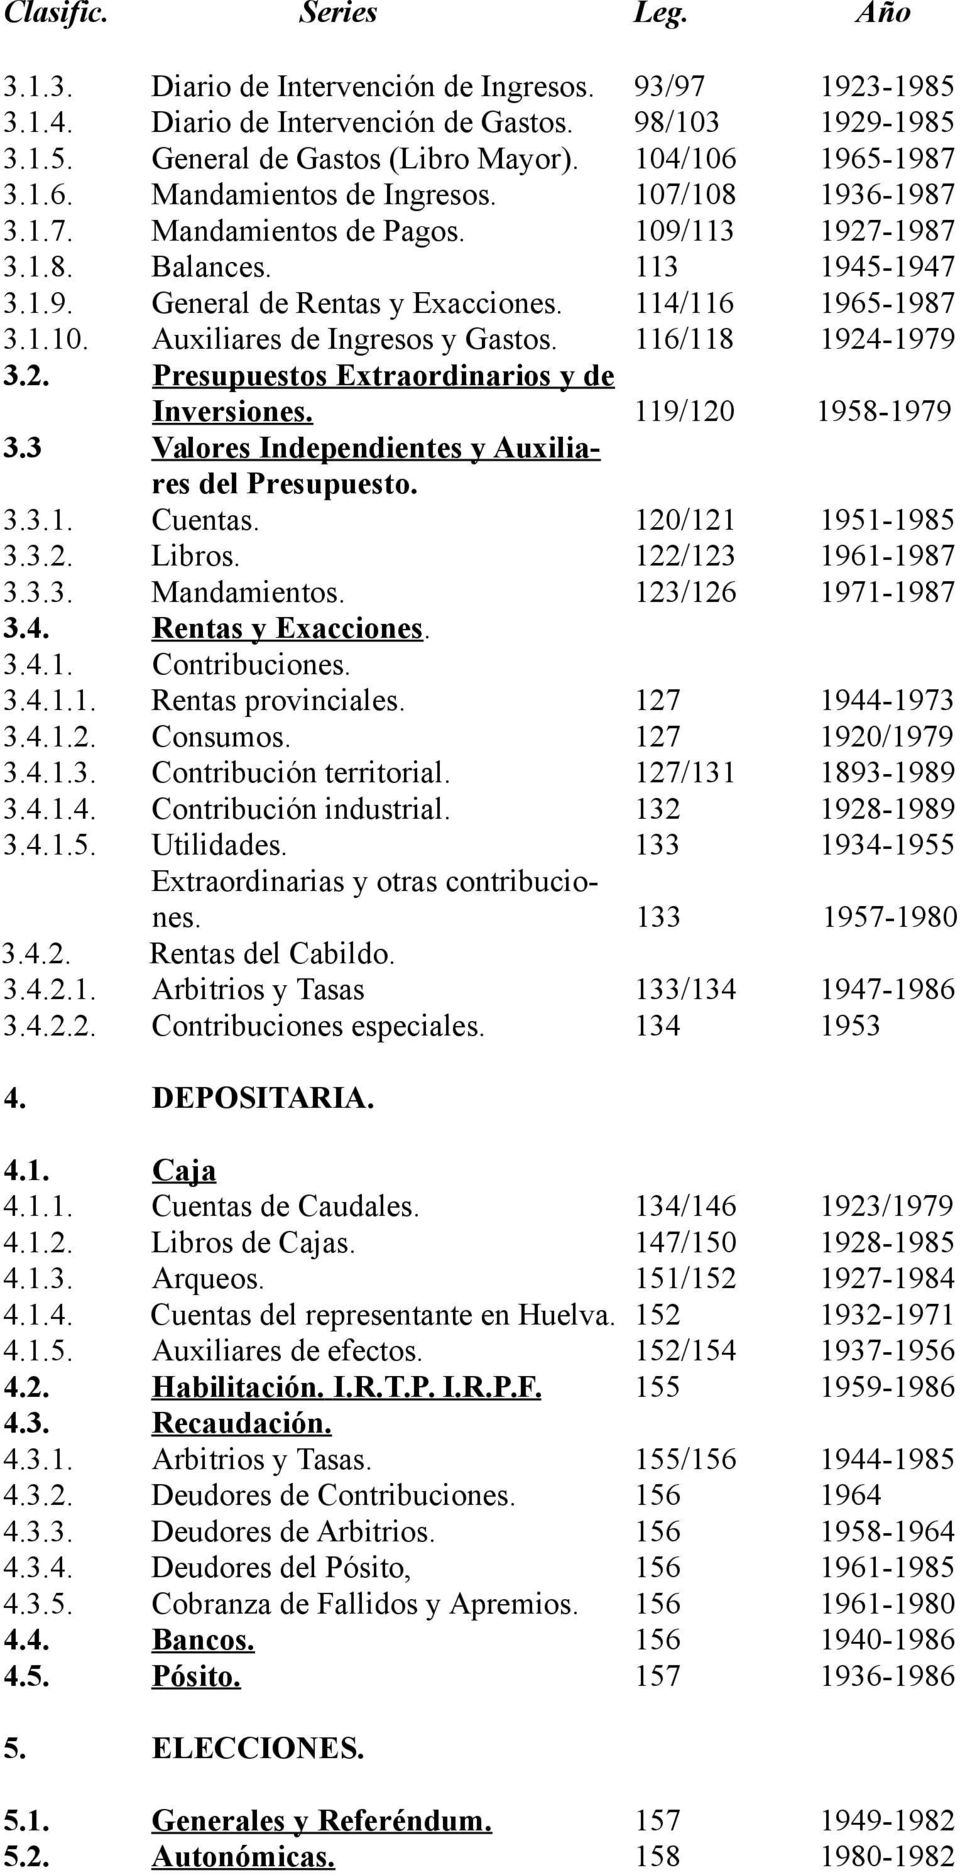 114/116 1965-1987 3.1.10. Auxiliares de Ingresos y Gastos. 116/118 1924-1979 3.2. Presupuestos Extraordinarios y de Inversiones. 119/120 1958-1979 3.